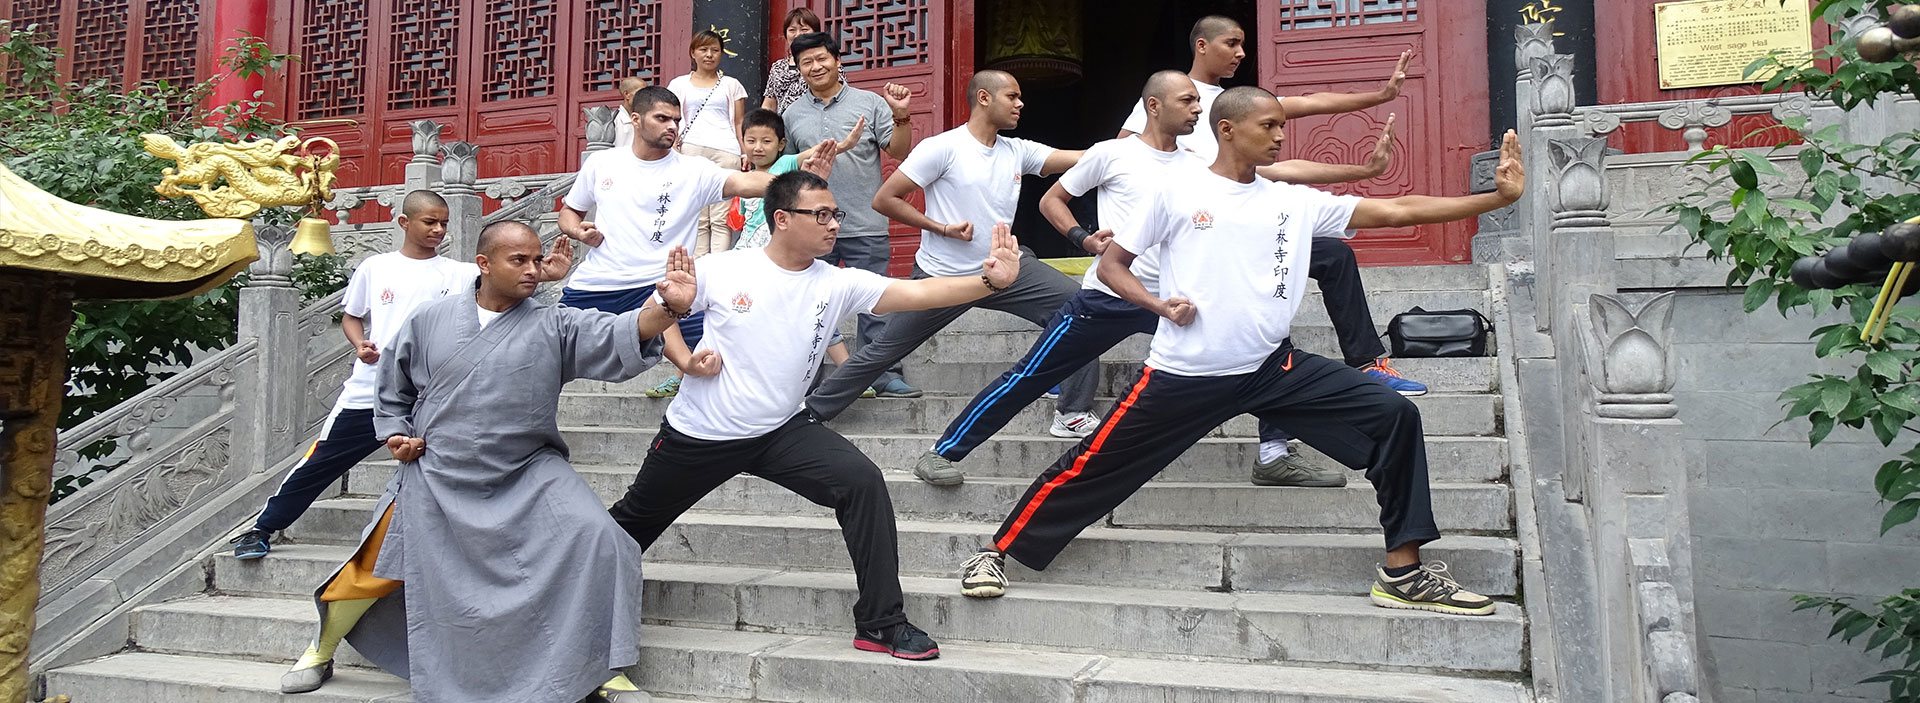 Shaolin India Kung fu classes | Shifu Kanishka | Martialarts India